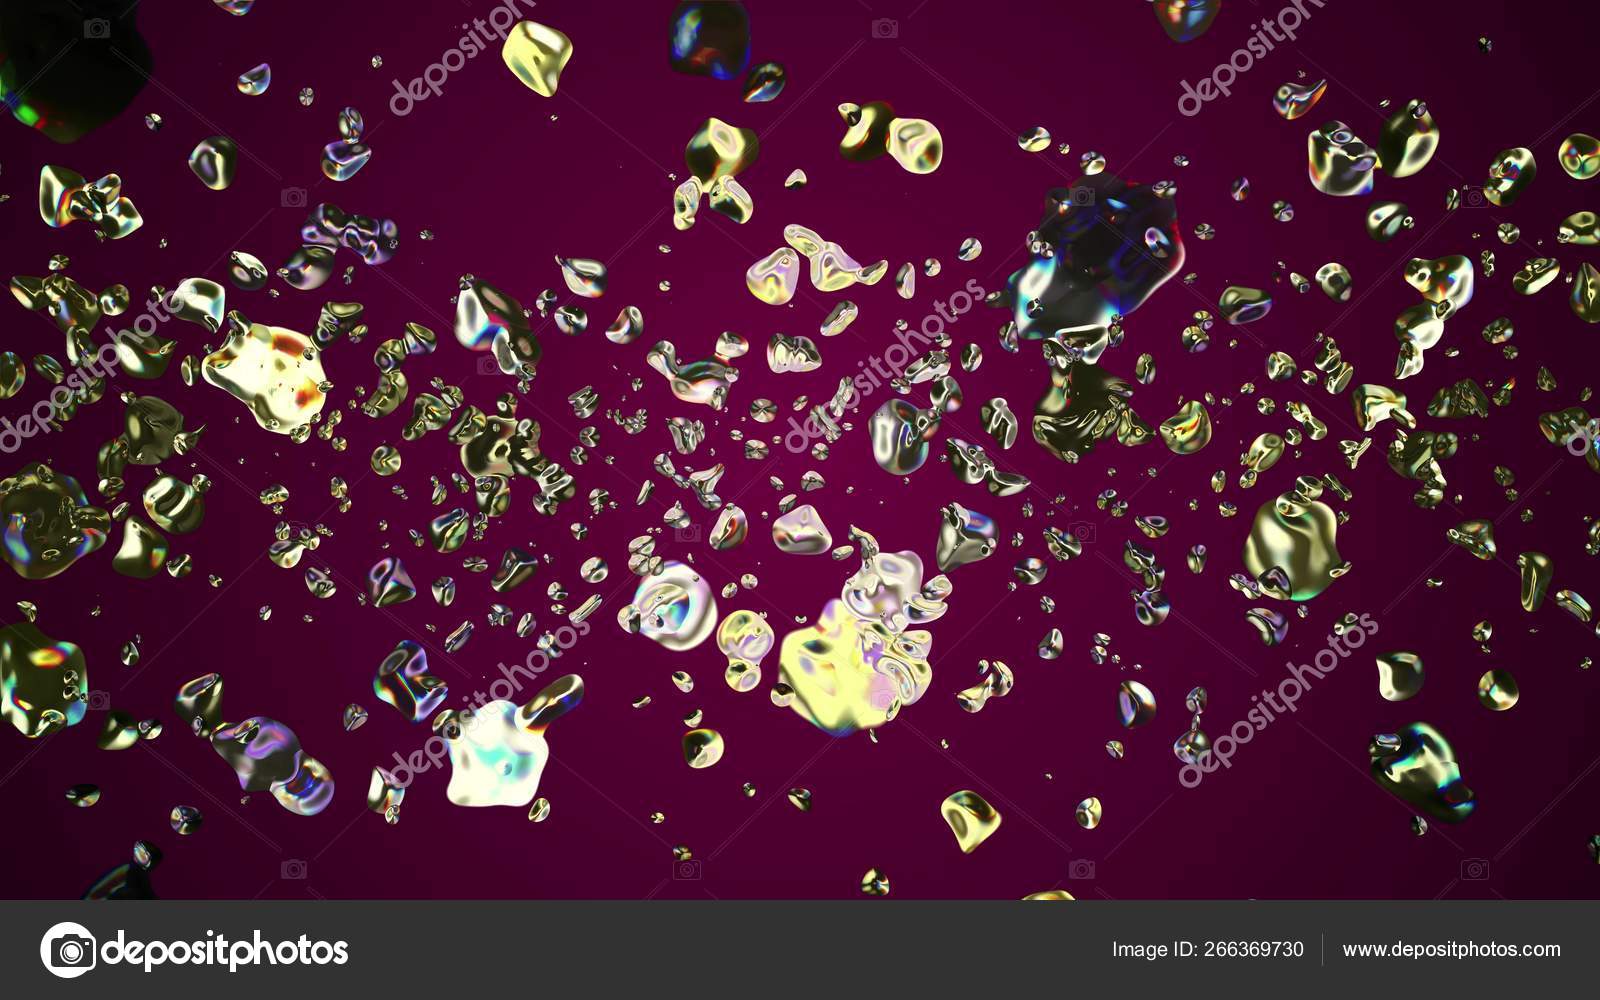 カラフルな金属の水滴が宇宙デジタルイラストの背景に拡散新しい品質の自然なグラフィッククール素敵な美しい4kストック画像 ストック写真 C Sbi 266369730